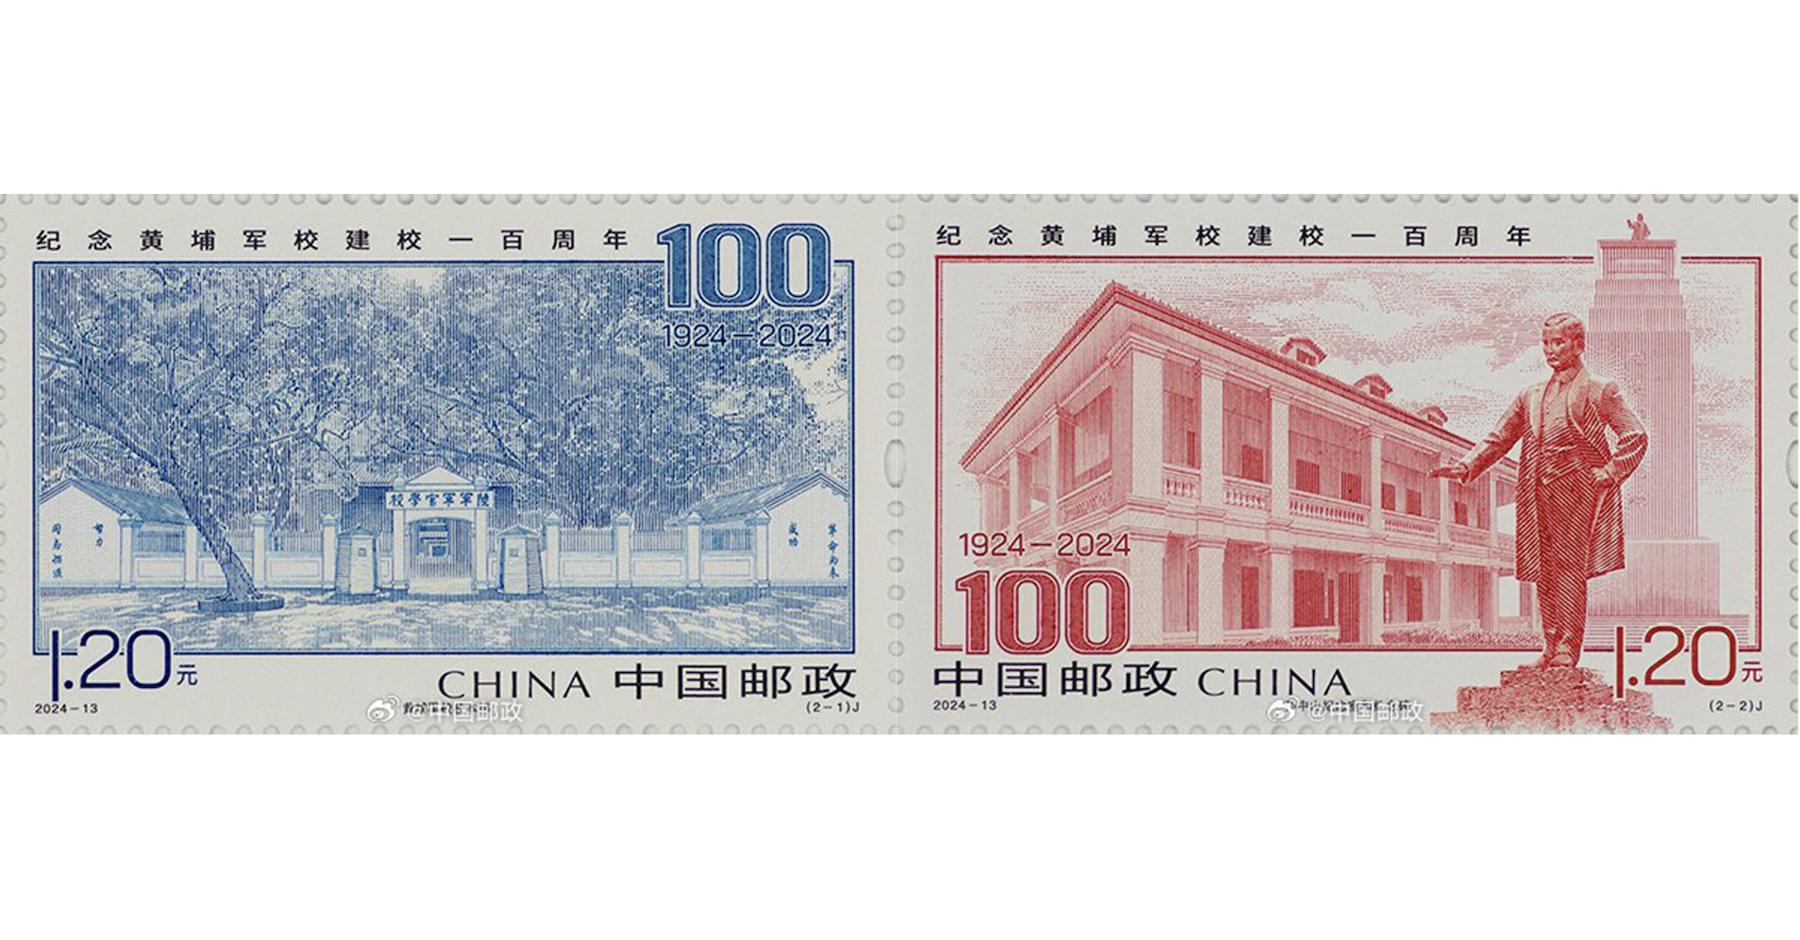 【黃埔百年】中國郵政也推紀念郵票 規劃發行665萬套